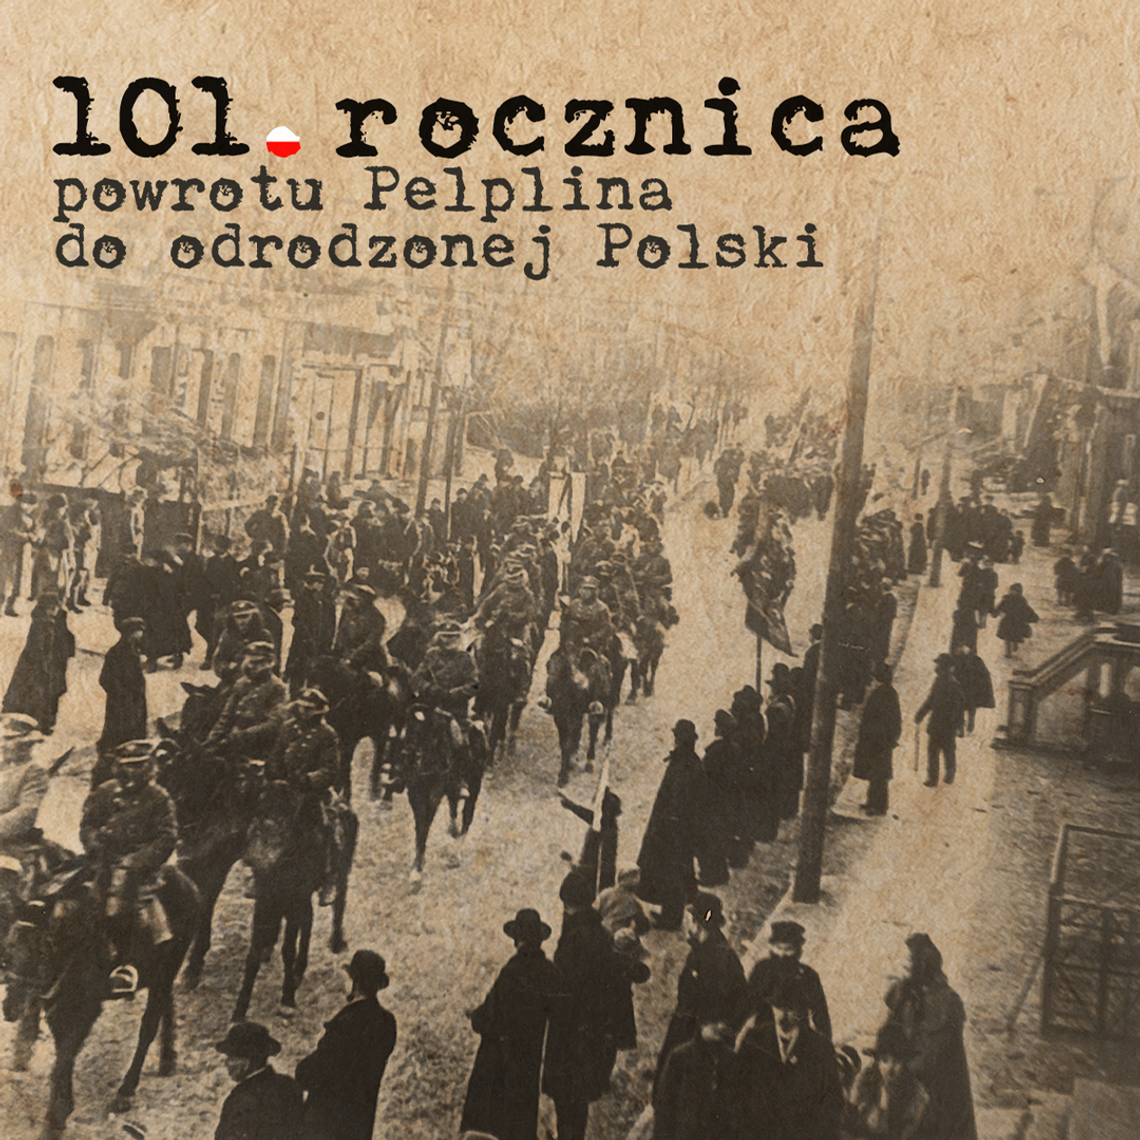 101. rocznica powrotu Pelplina do odrodzonej Polski. Generał Haller znów odwiedzi to miasto